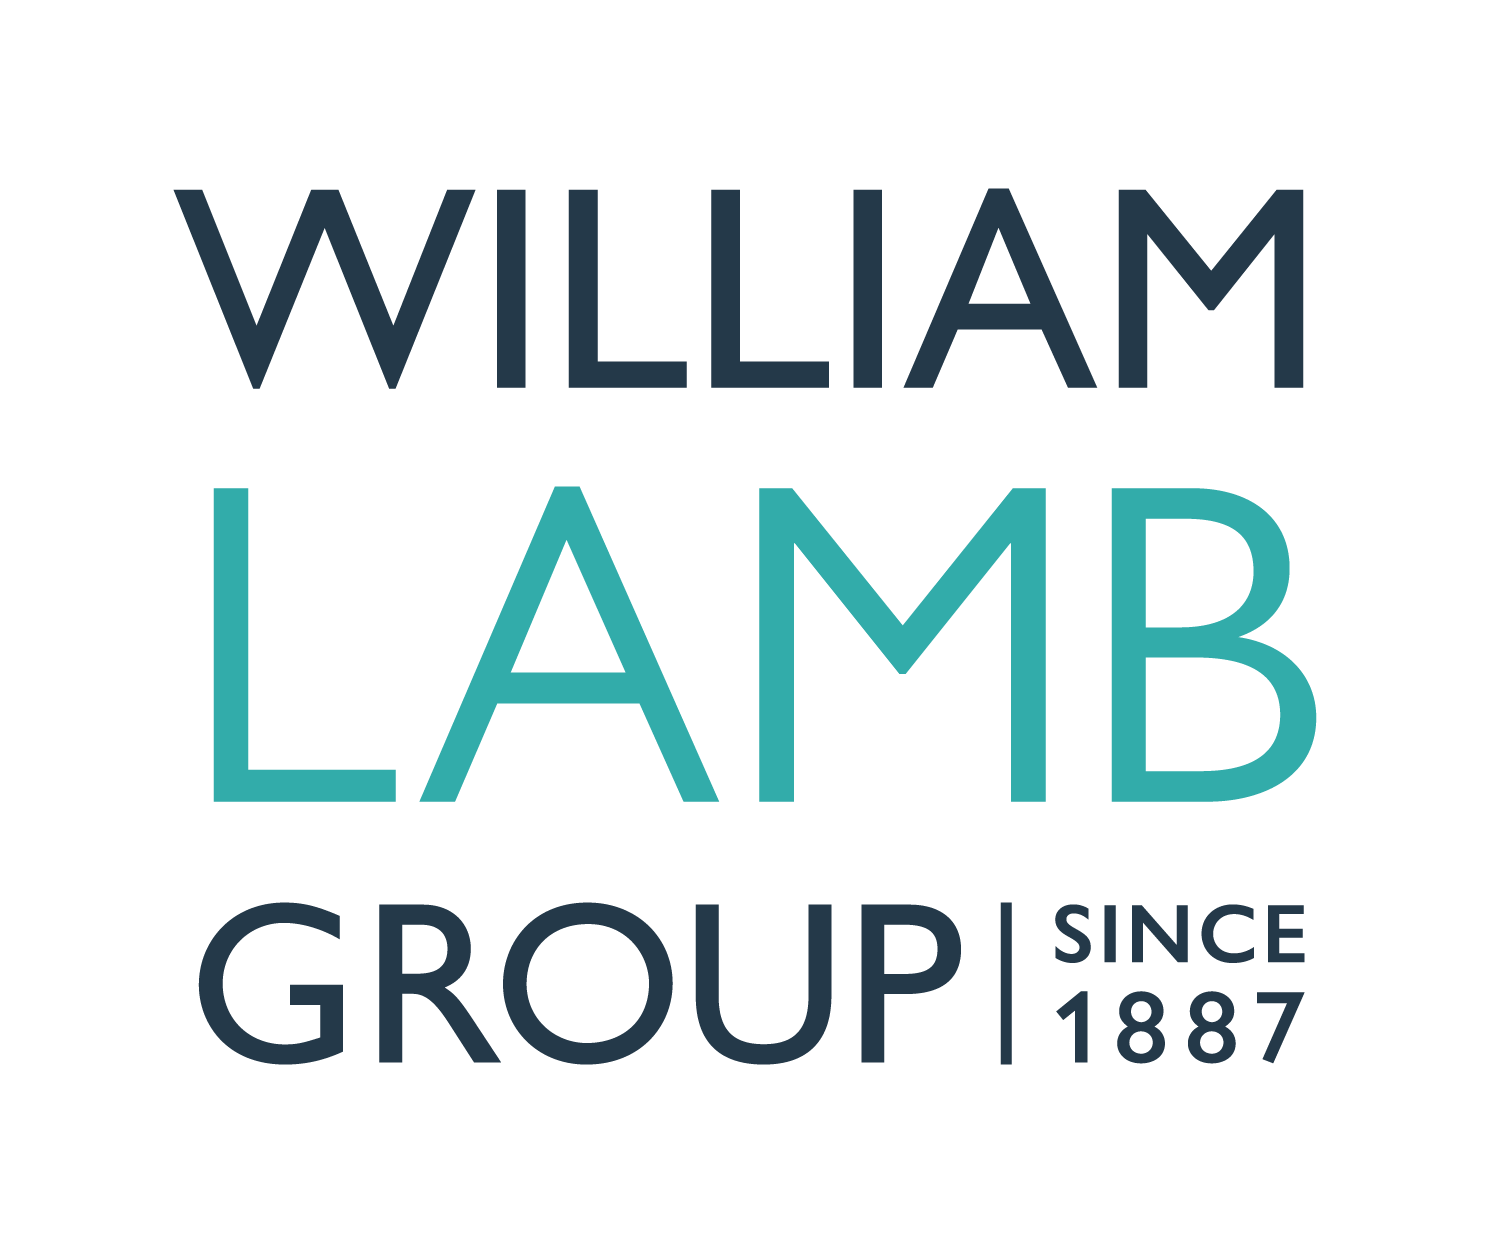 WILLIAM LAMB GROUP